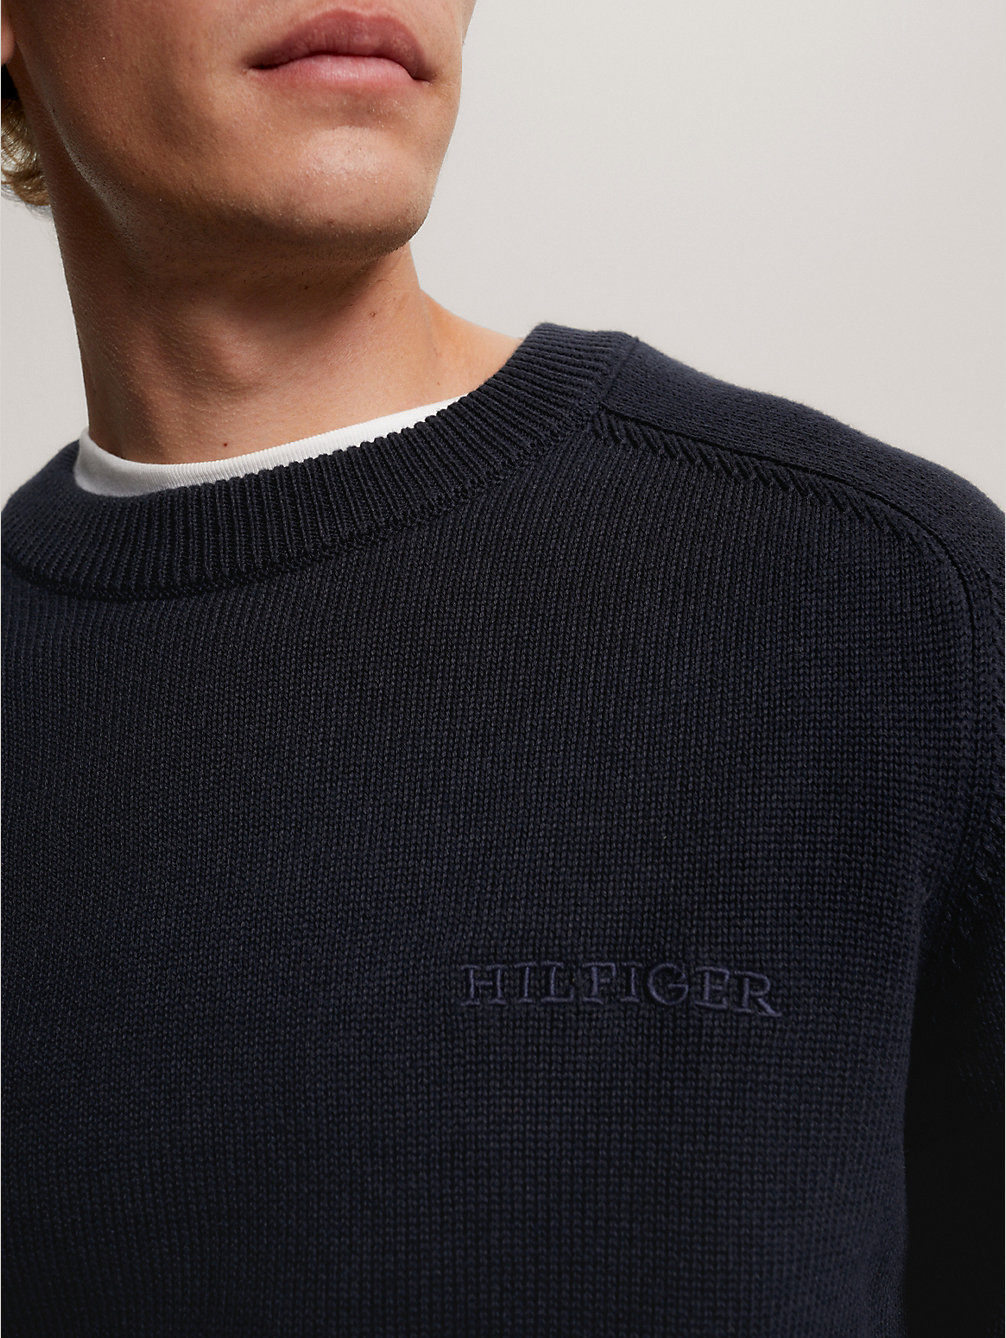 blue sweter z okrągłym dekoltem i monotypowym logo dla mężczyźni - tommy hilfiger